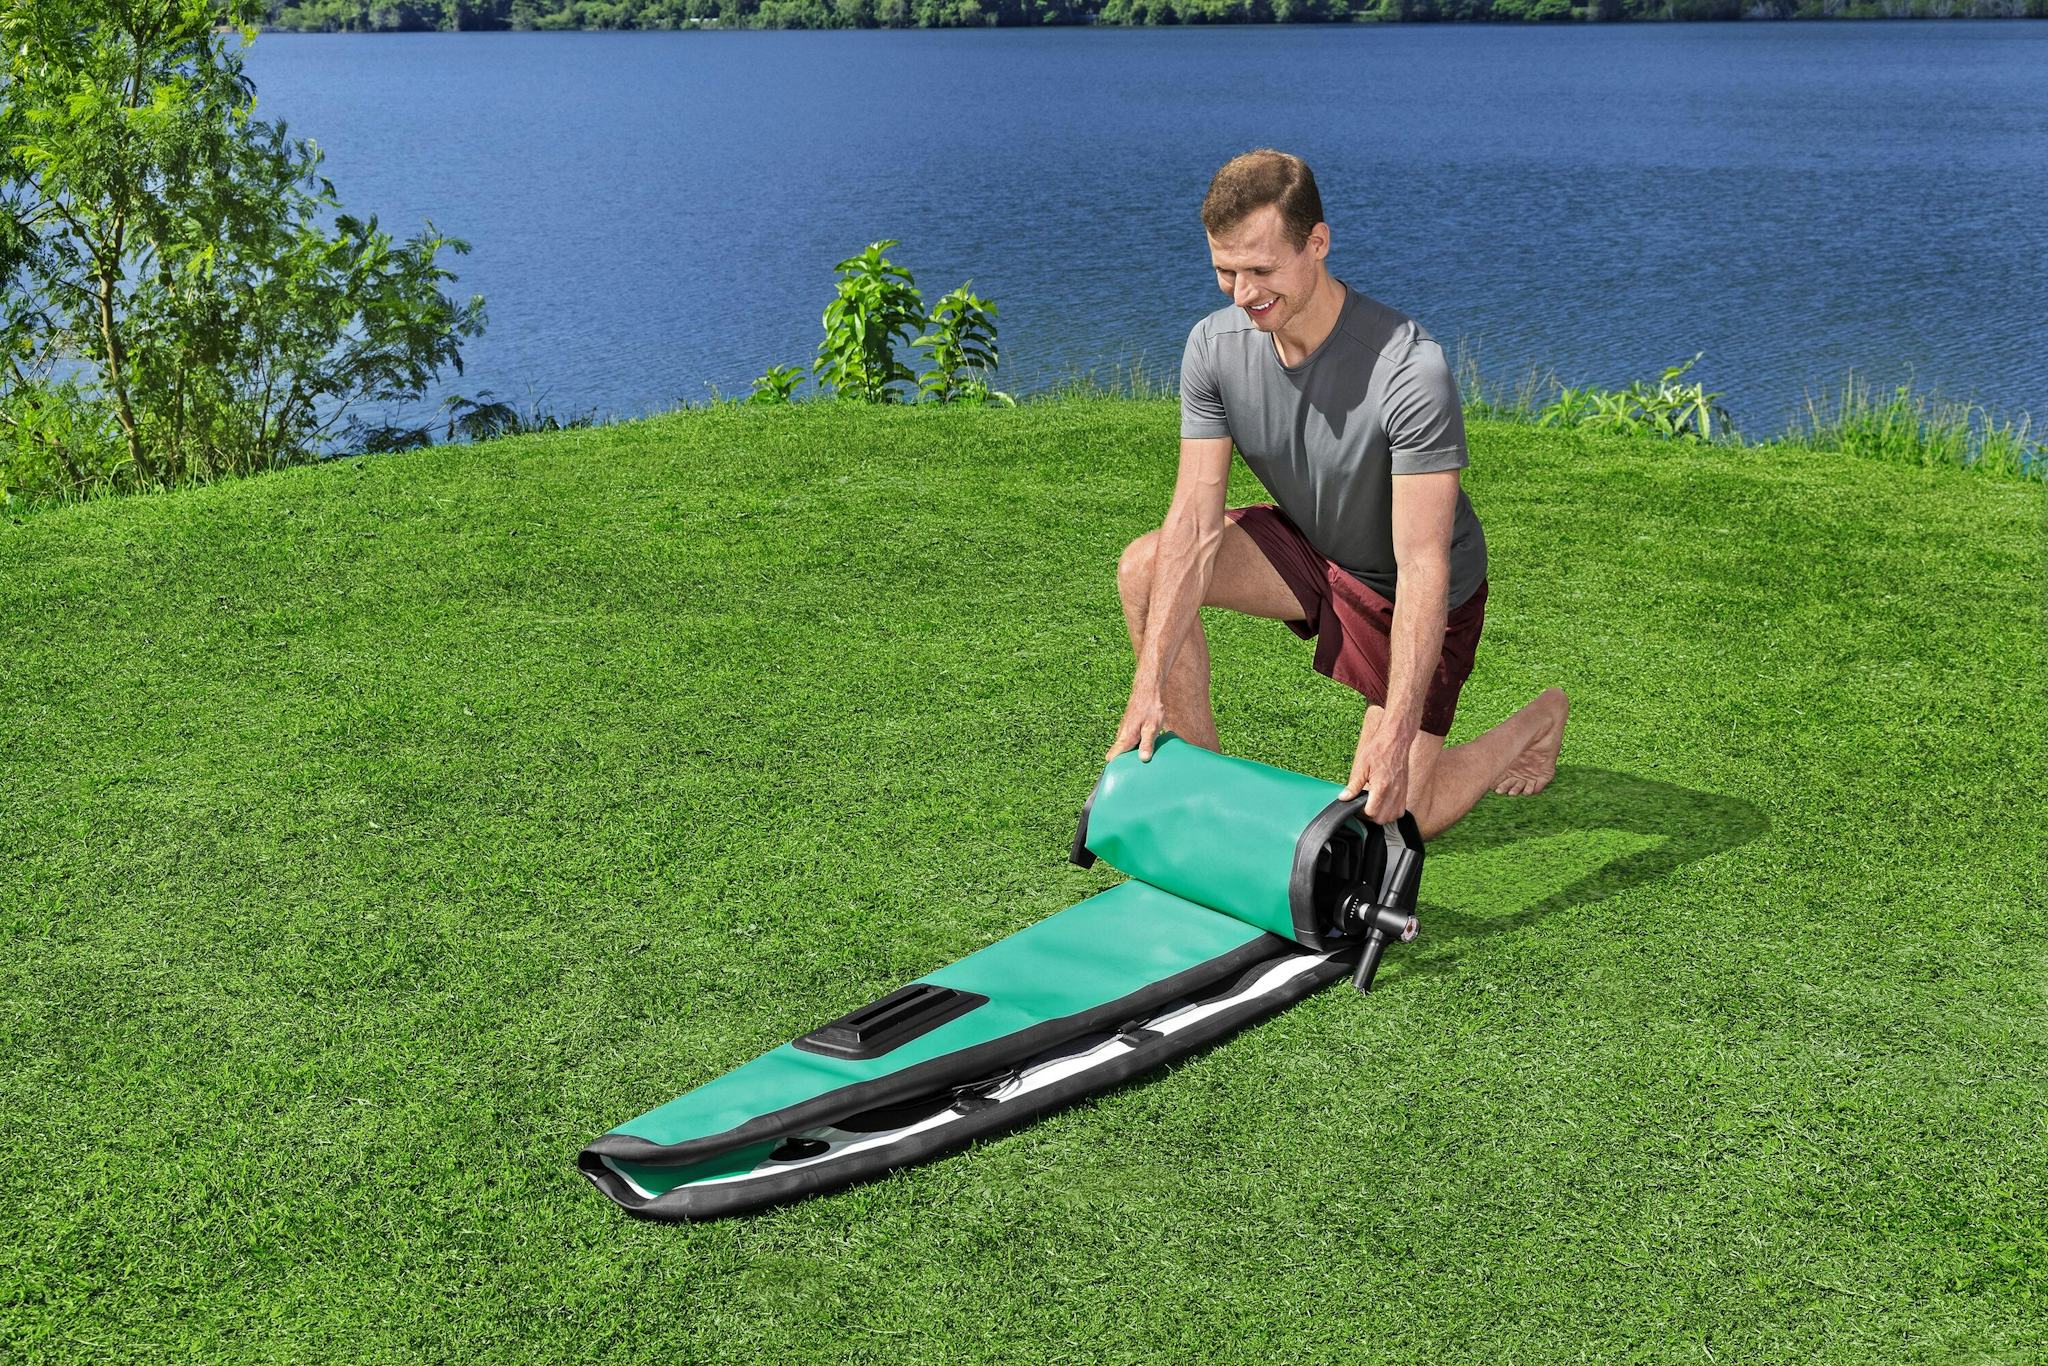 Sports d'eau Paddle SUP gonflable Hydro-Force™ Aqua Wander, 305 x 84 x 12 cm avec pagaie, leash, pompe, 2 ailerons et sac à dos de transport, siège détachable Bestway 8